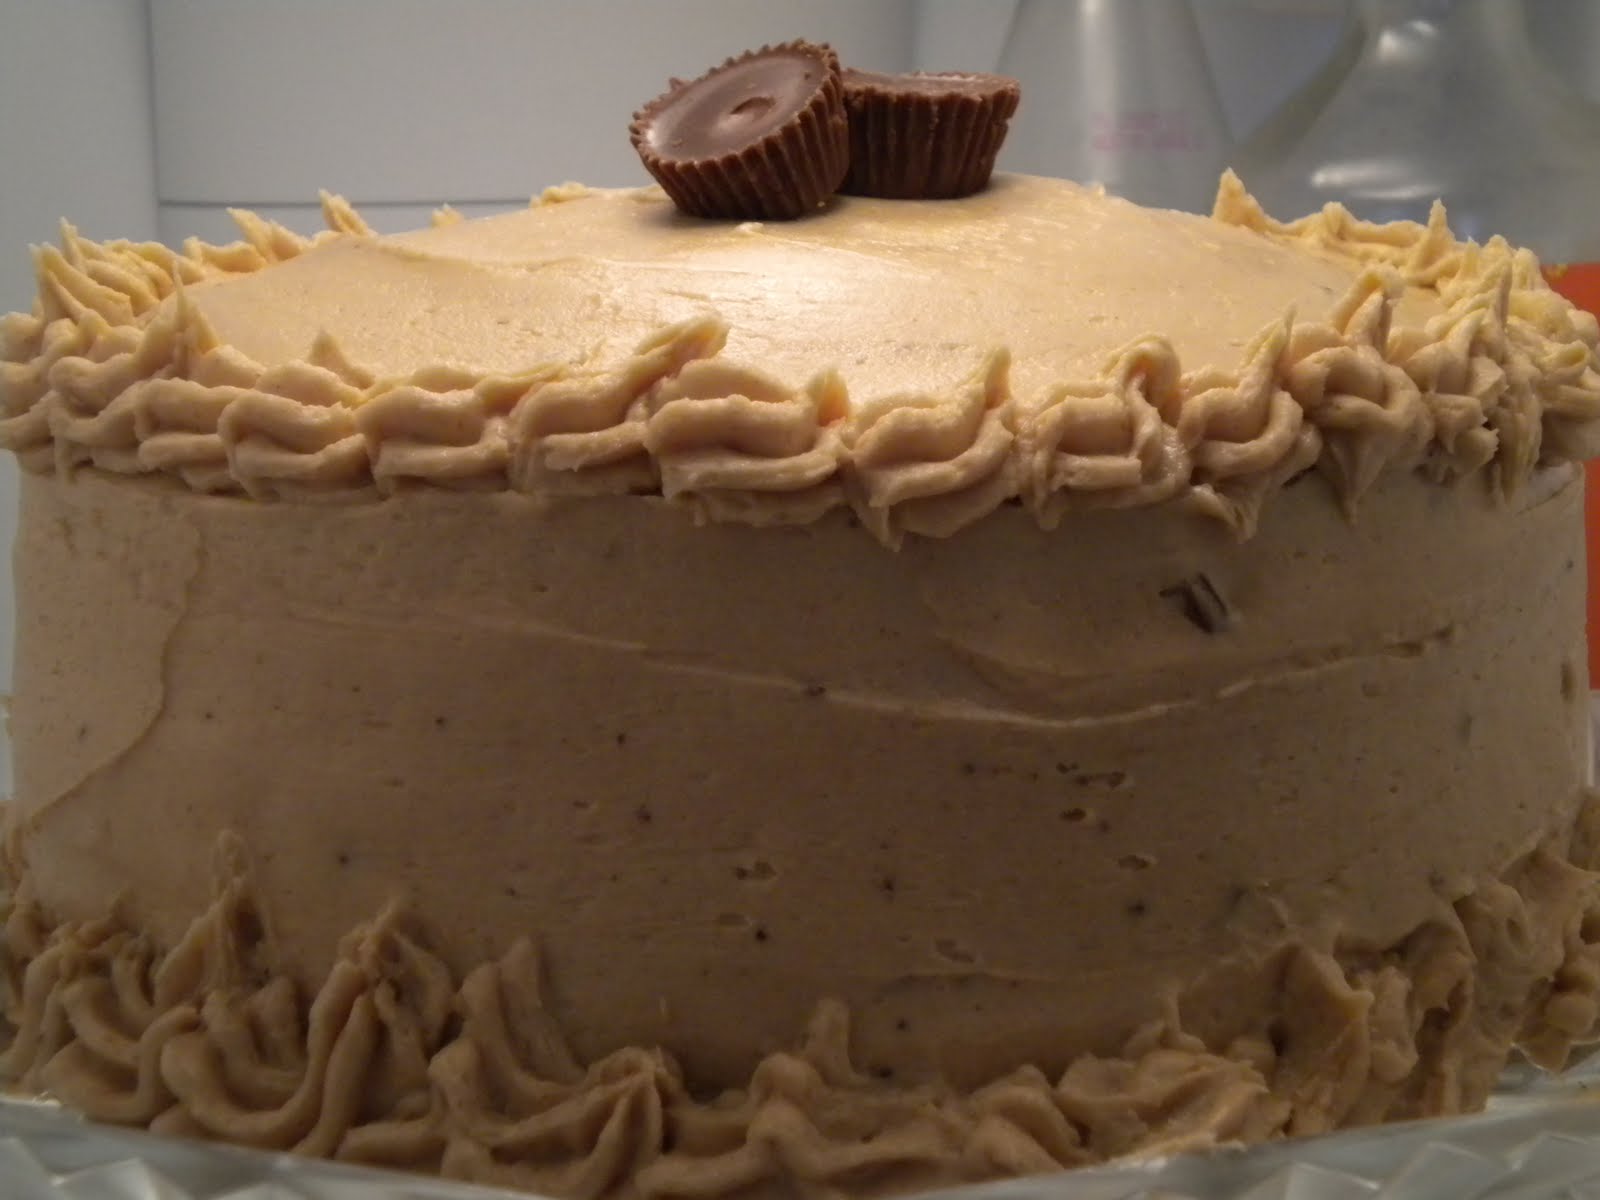 Liebe ist der beste Koch: My boyfriend's birthday cake!!